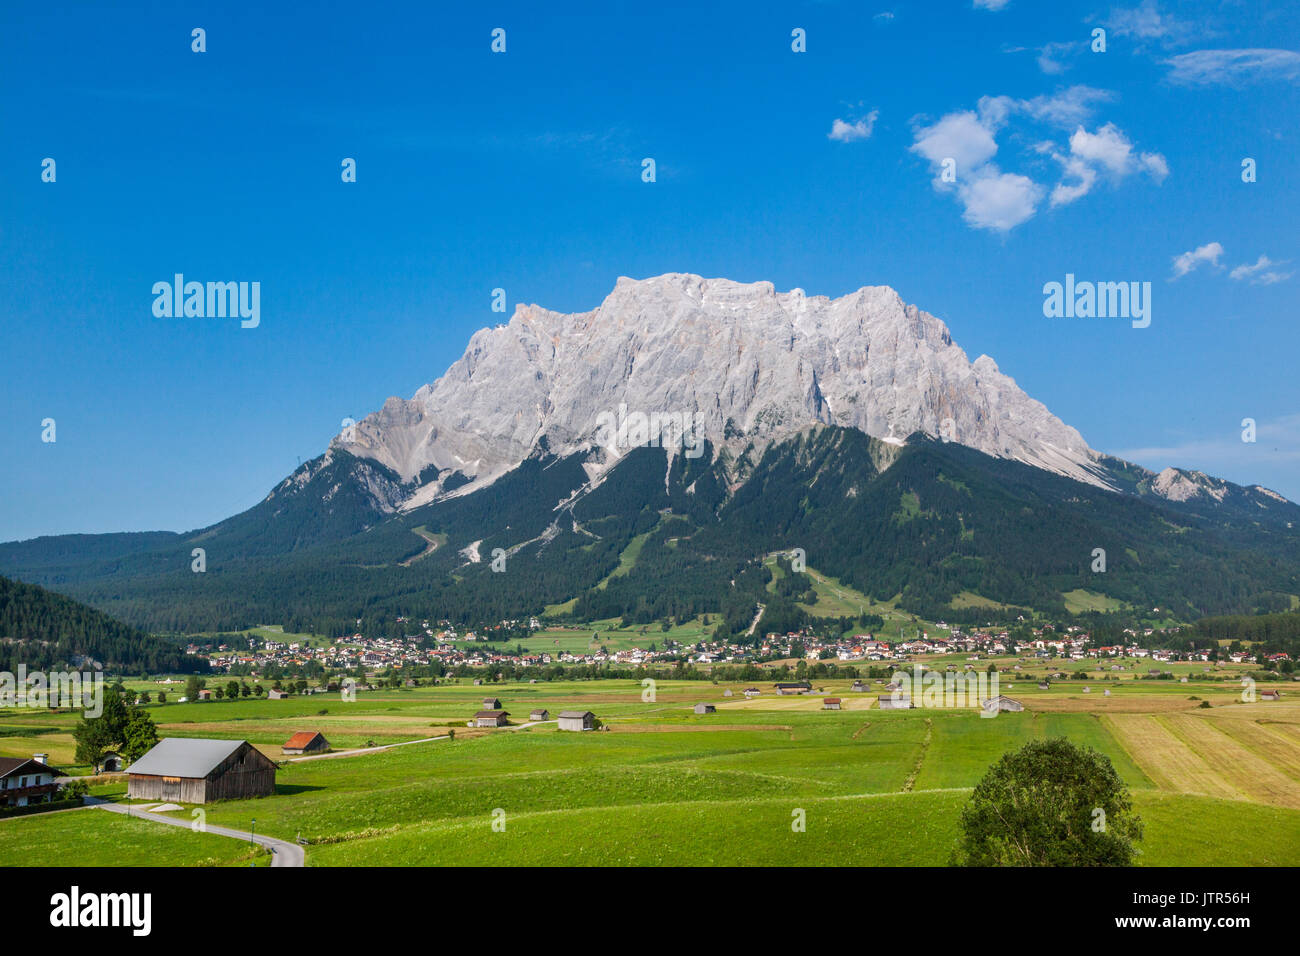 Österreich, Tirol, Nördlichen Kalkalpen in den Ostalpen, Blick auf das Wettersteingebirge mit der Zugspitze Gruppe über die ehrwalder Becken. Stockfoto